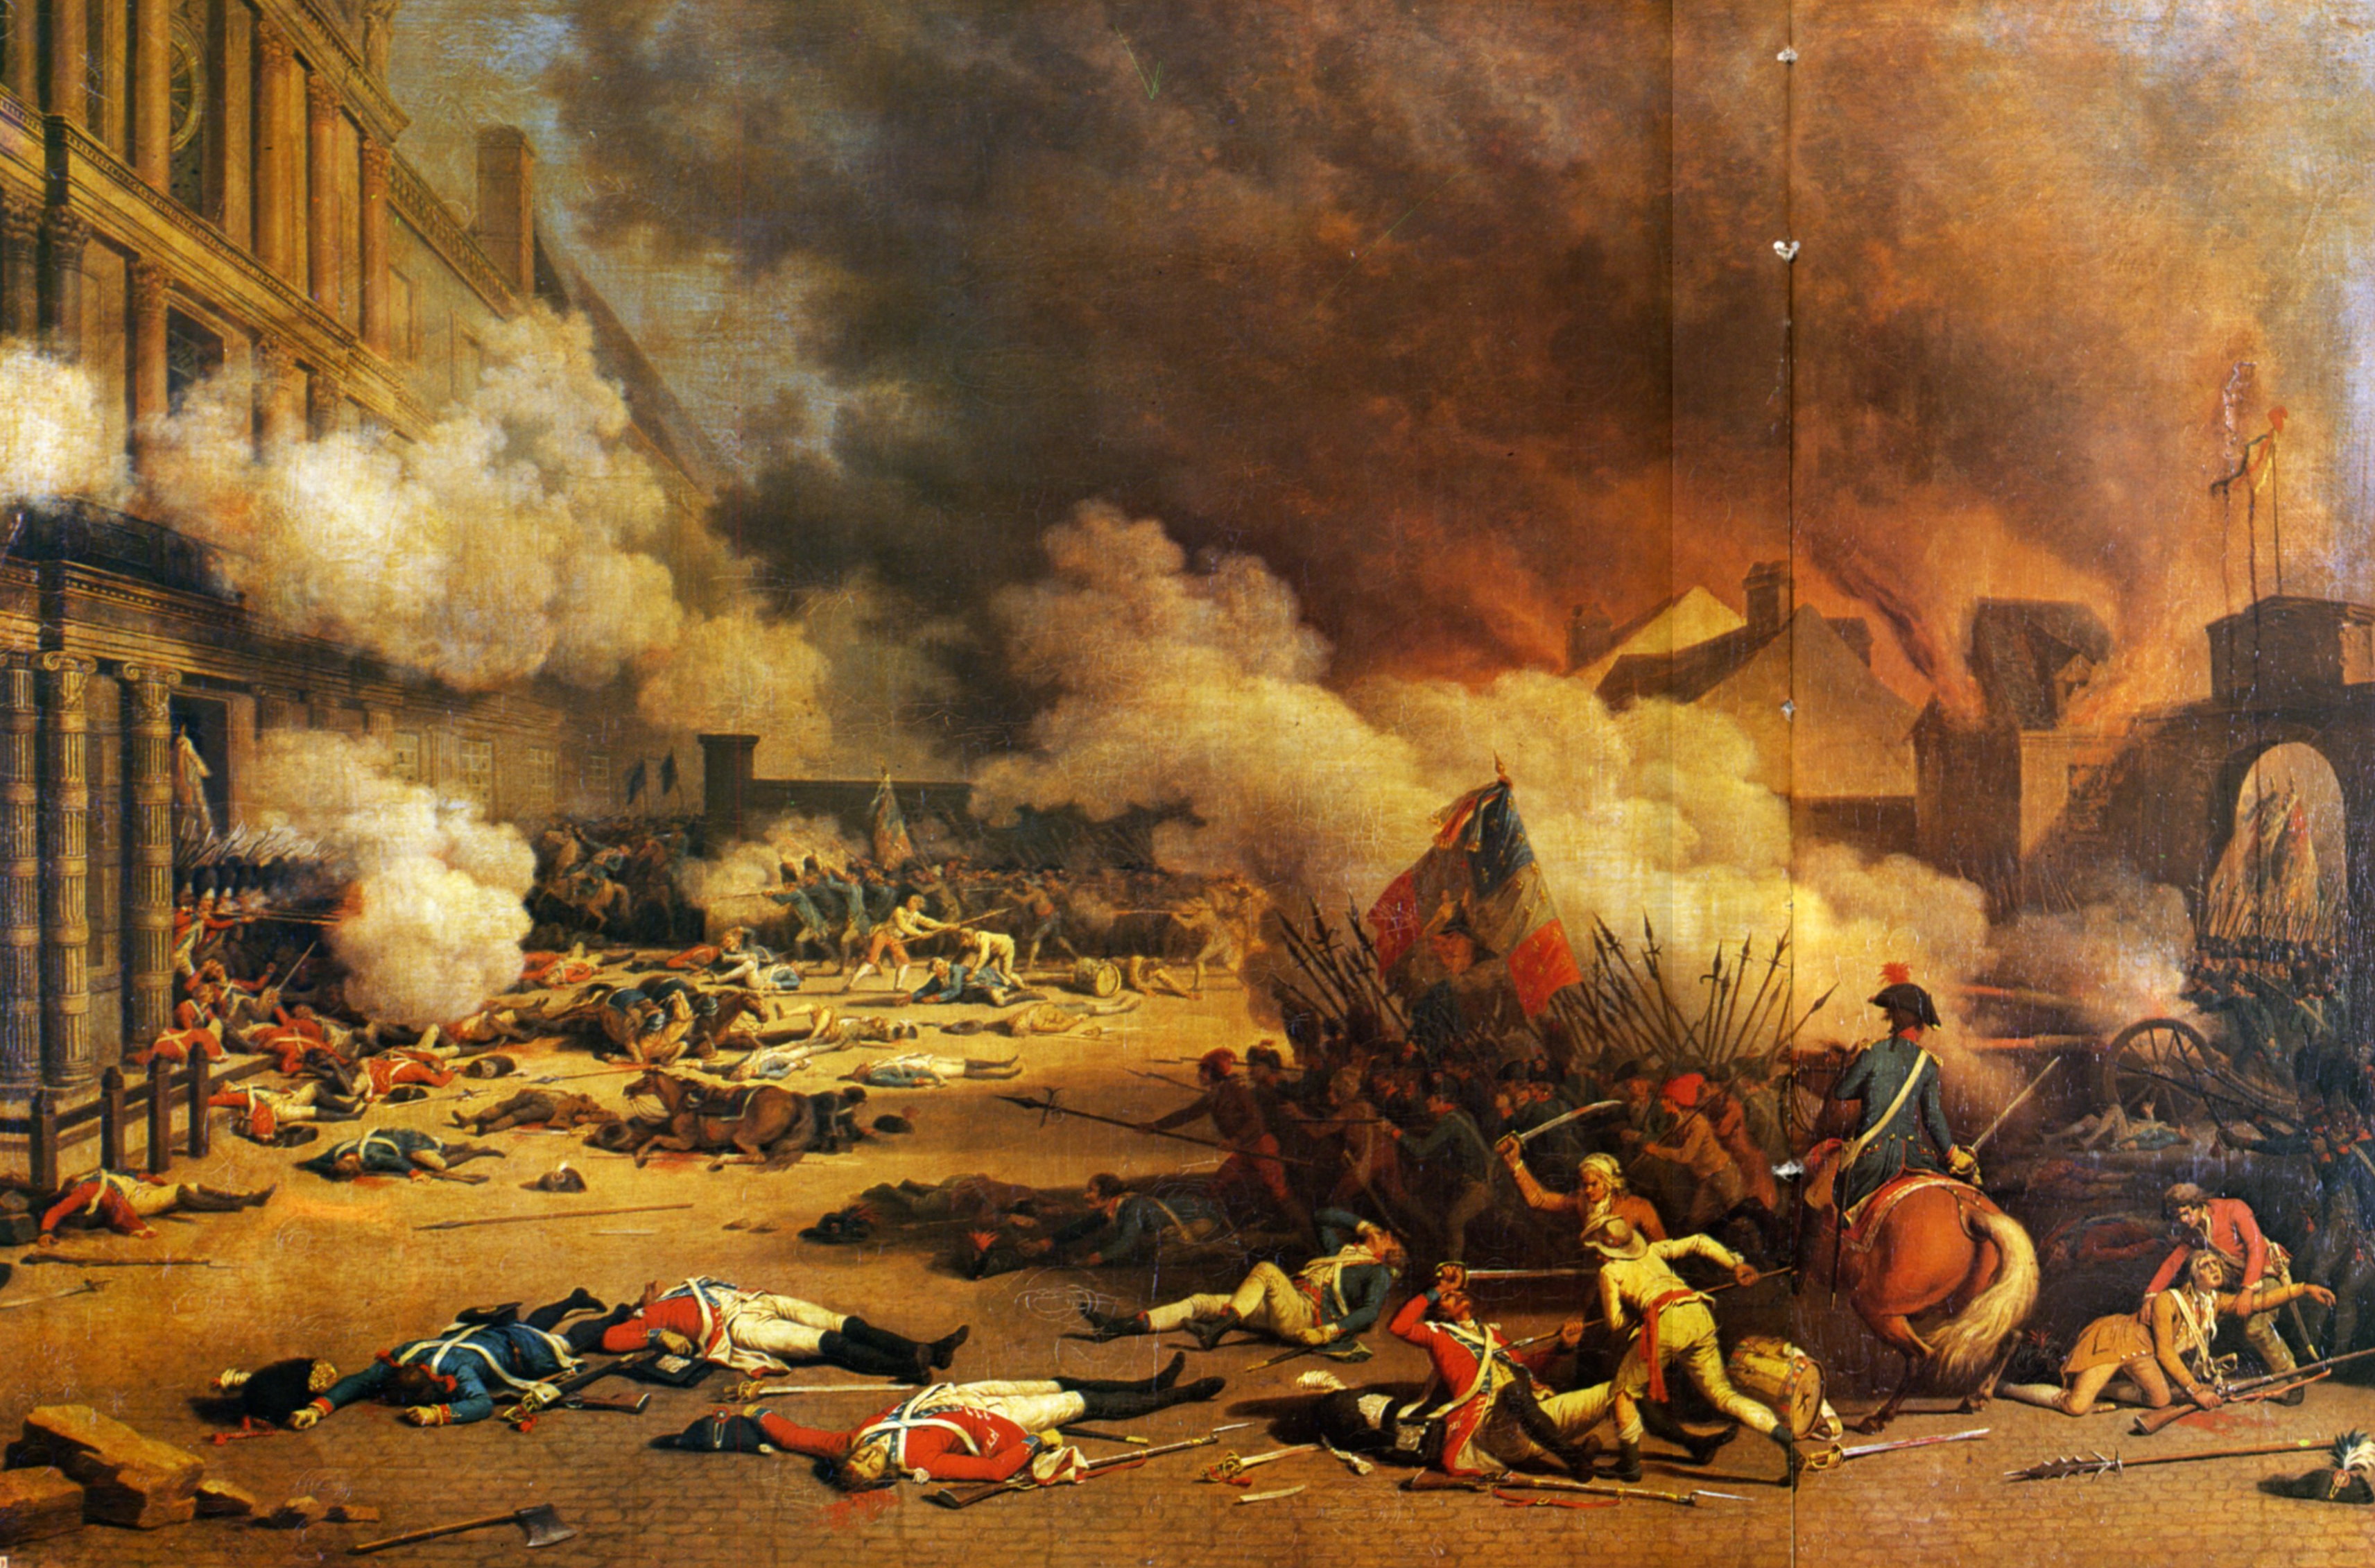 Iconographie De La Revolution Francaise 1789-1799 - 1792 08 10 La prise des Tuileries par J. Bertaux.jpg